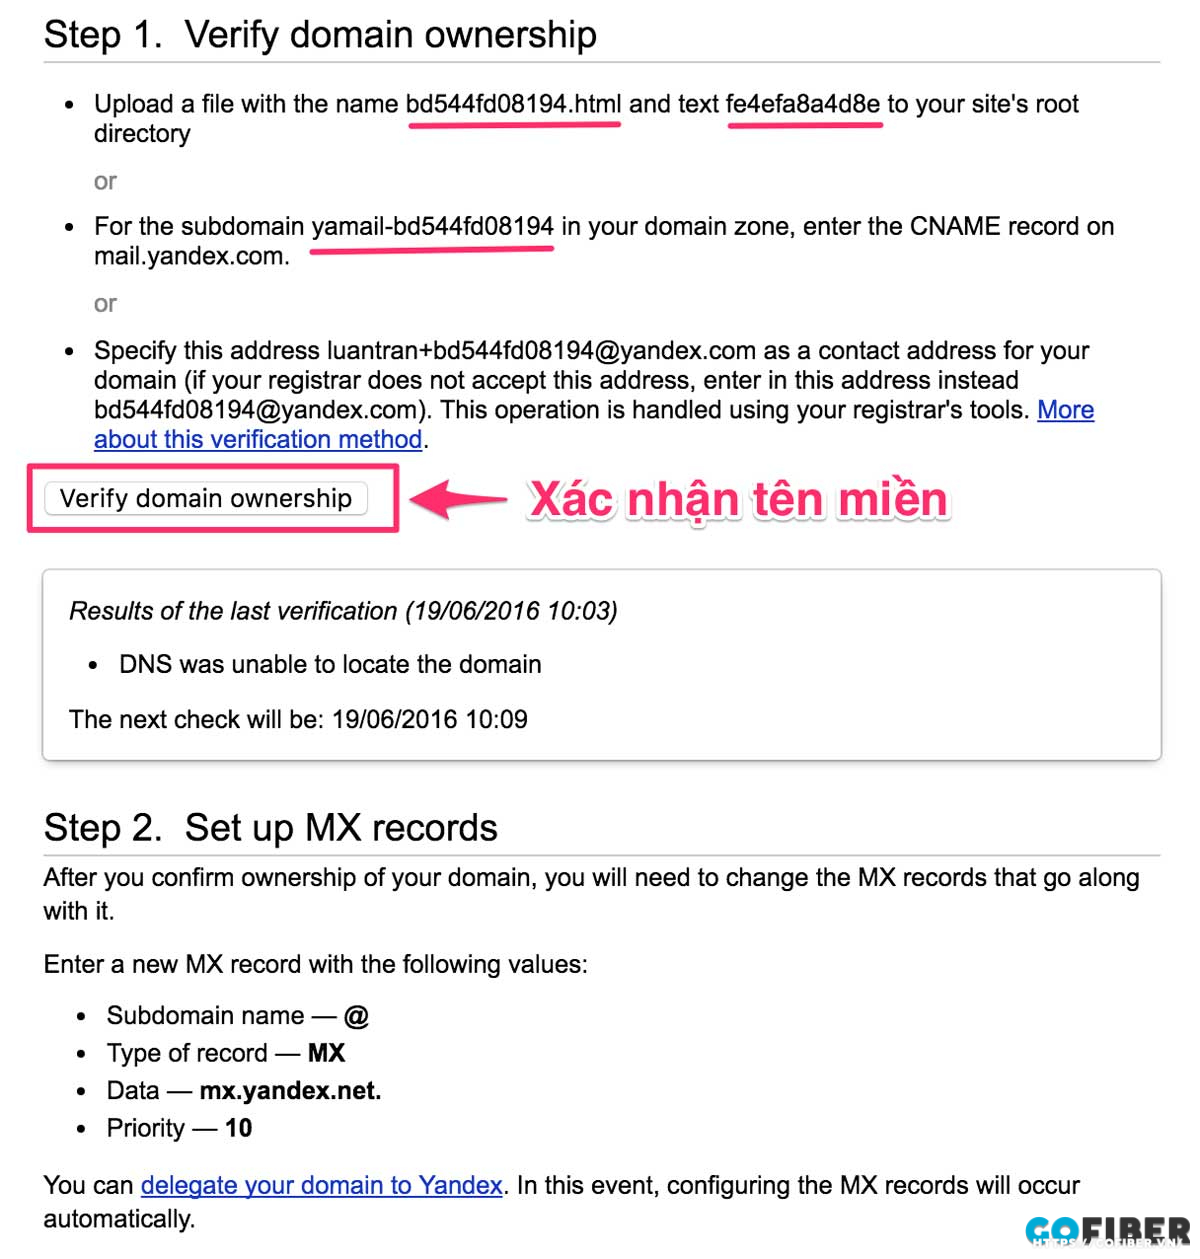 Xác thực tên miền trong Yandex mail